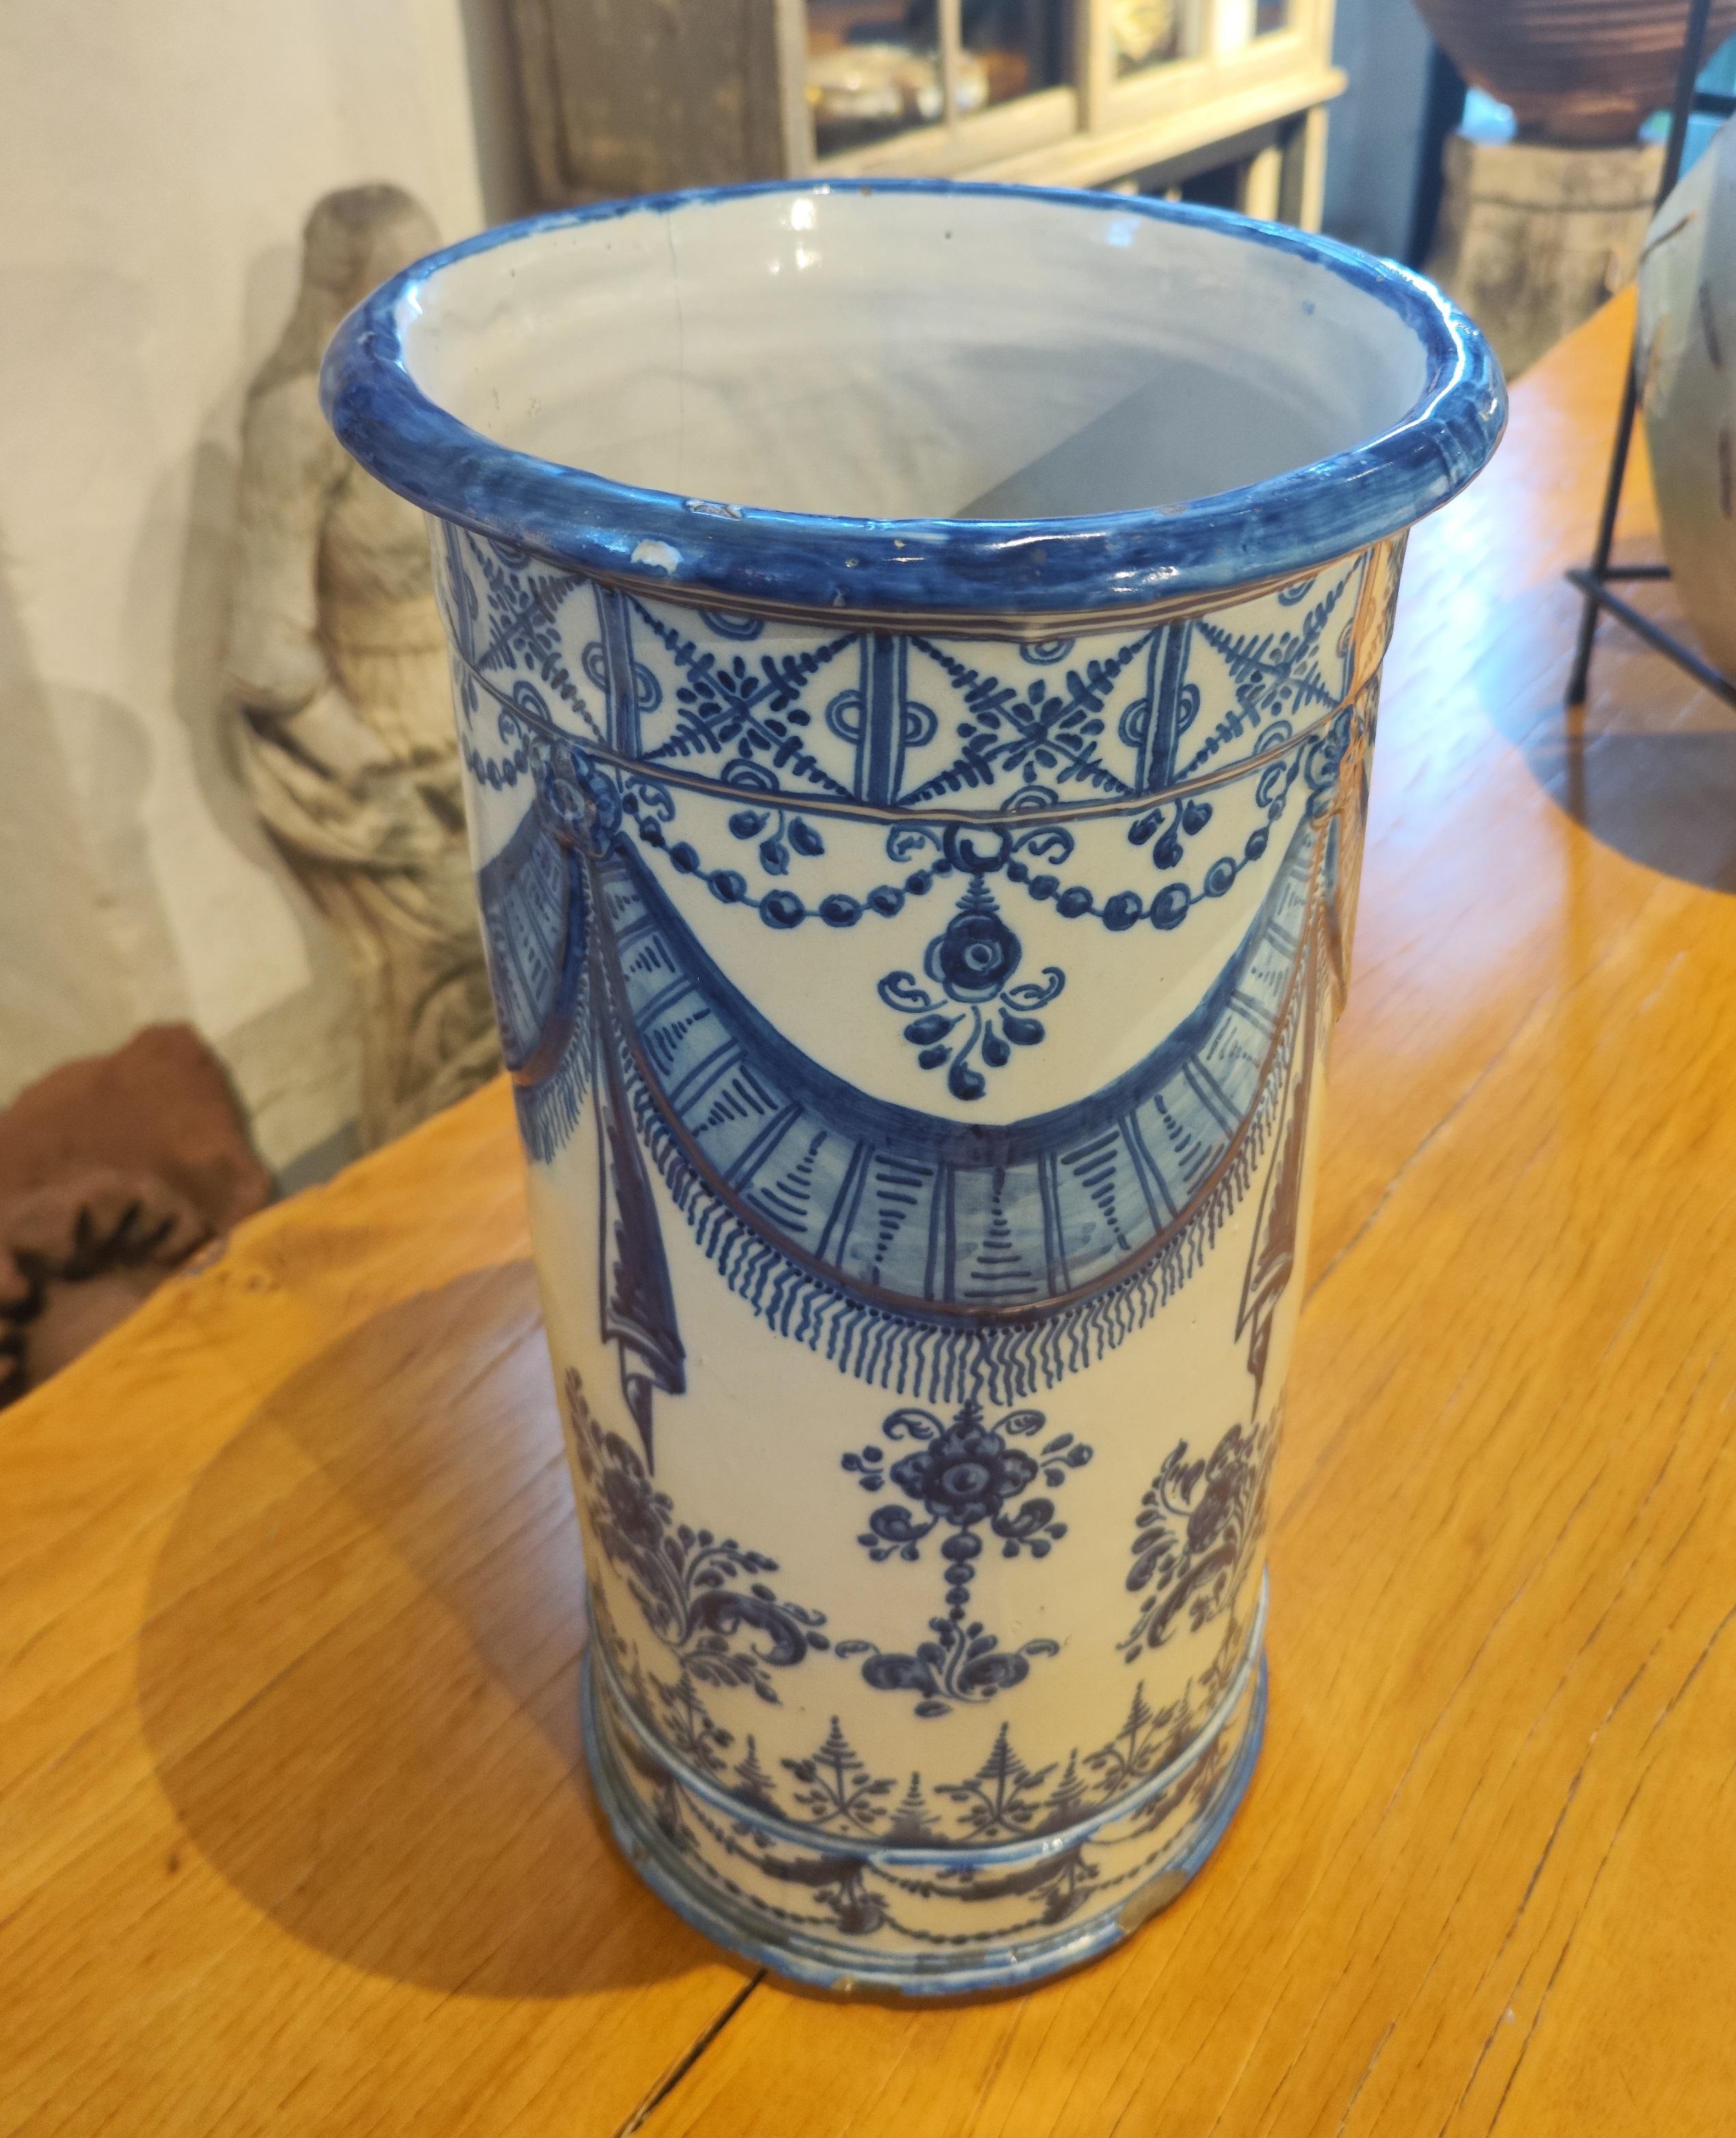 Ceramica de Talavera firmada en la base con decoracion en tono azul y blanco de guirnaldas y flores . Firmado en la parte inferior Talavera, España y el numero 383